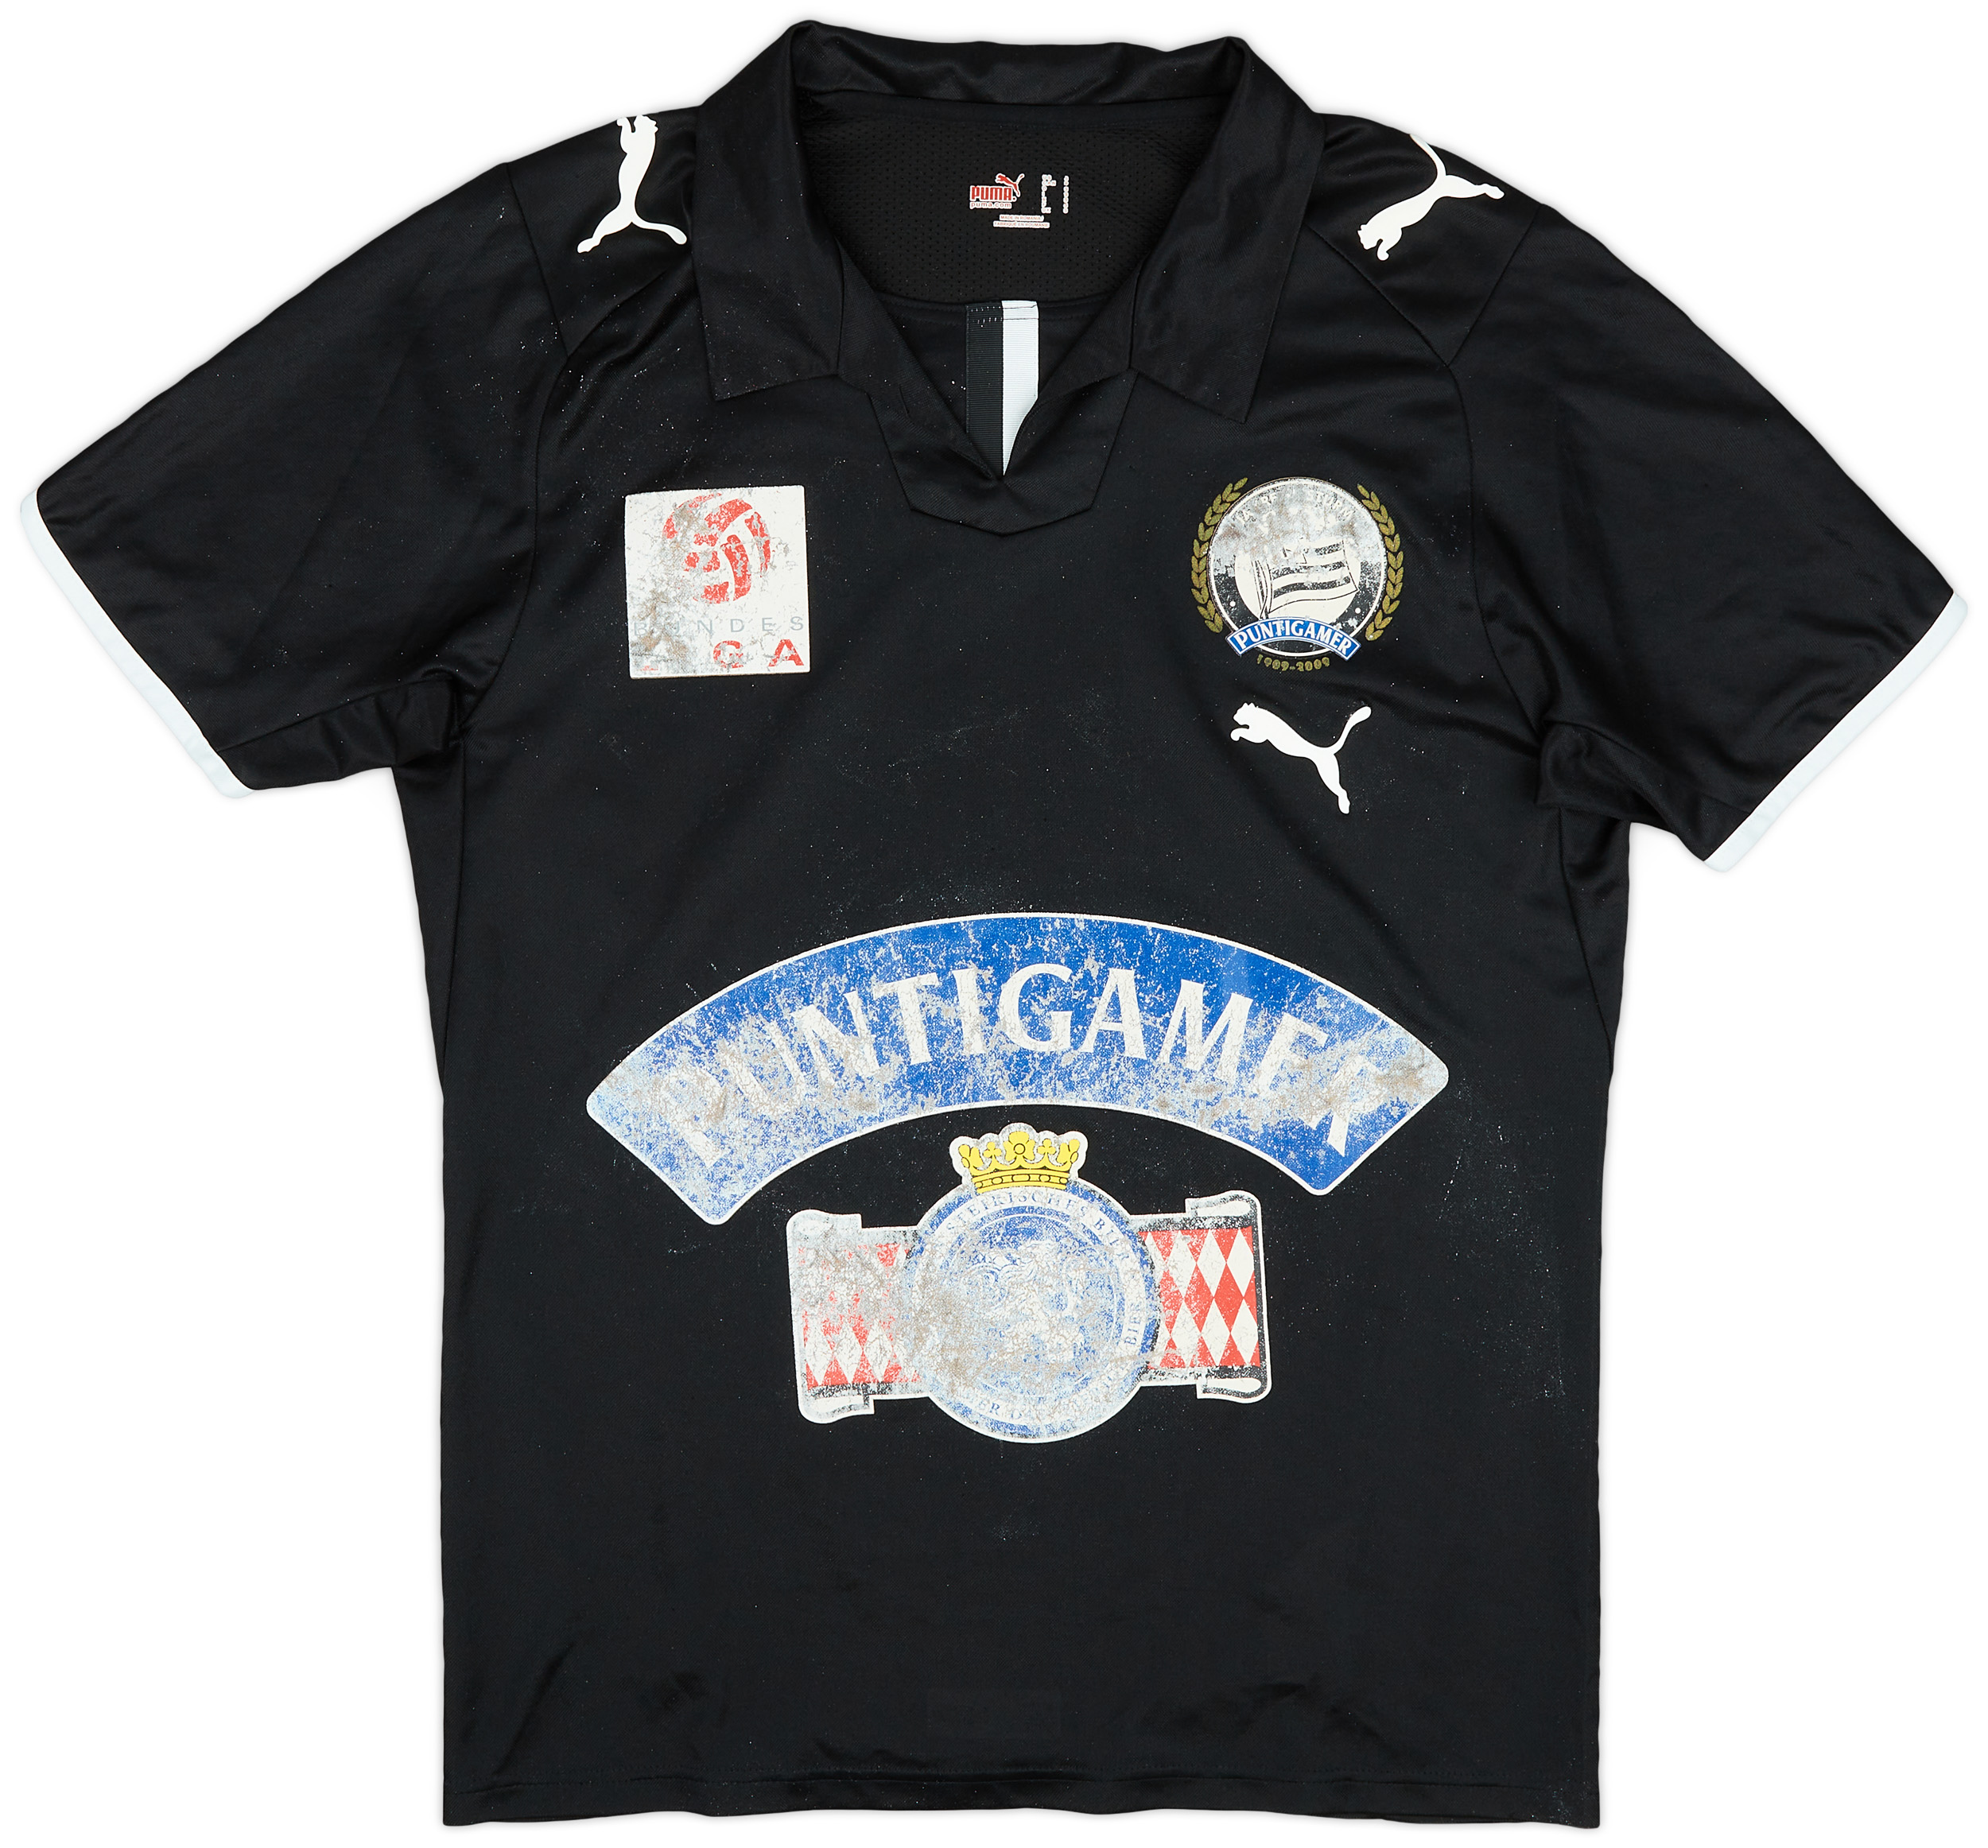 Retro SK Sturm Graz Shirt